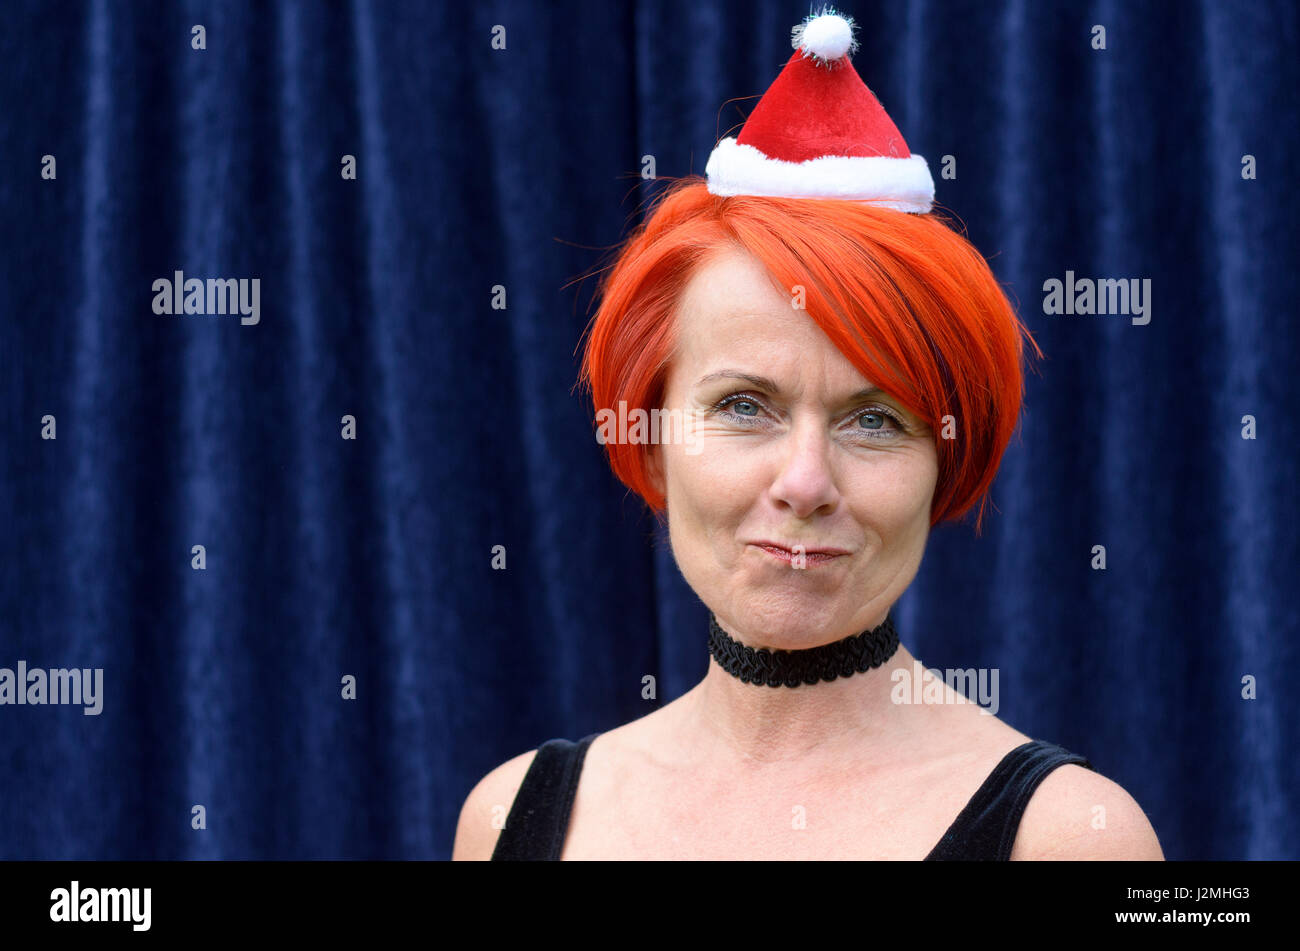 Spaß rothaarige Frau trägt eine Weihnachtsmütze ziehen ein süßes Gesicht in die Kamera, wie sie die Weihnachtszeit gegen einen blauen Vorhang staatlich feiert Stockfoto